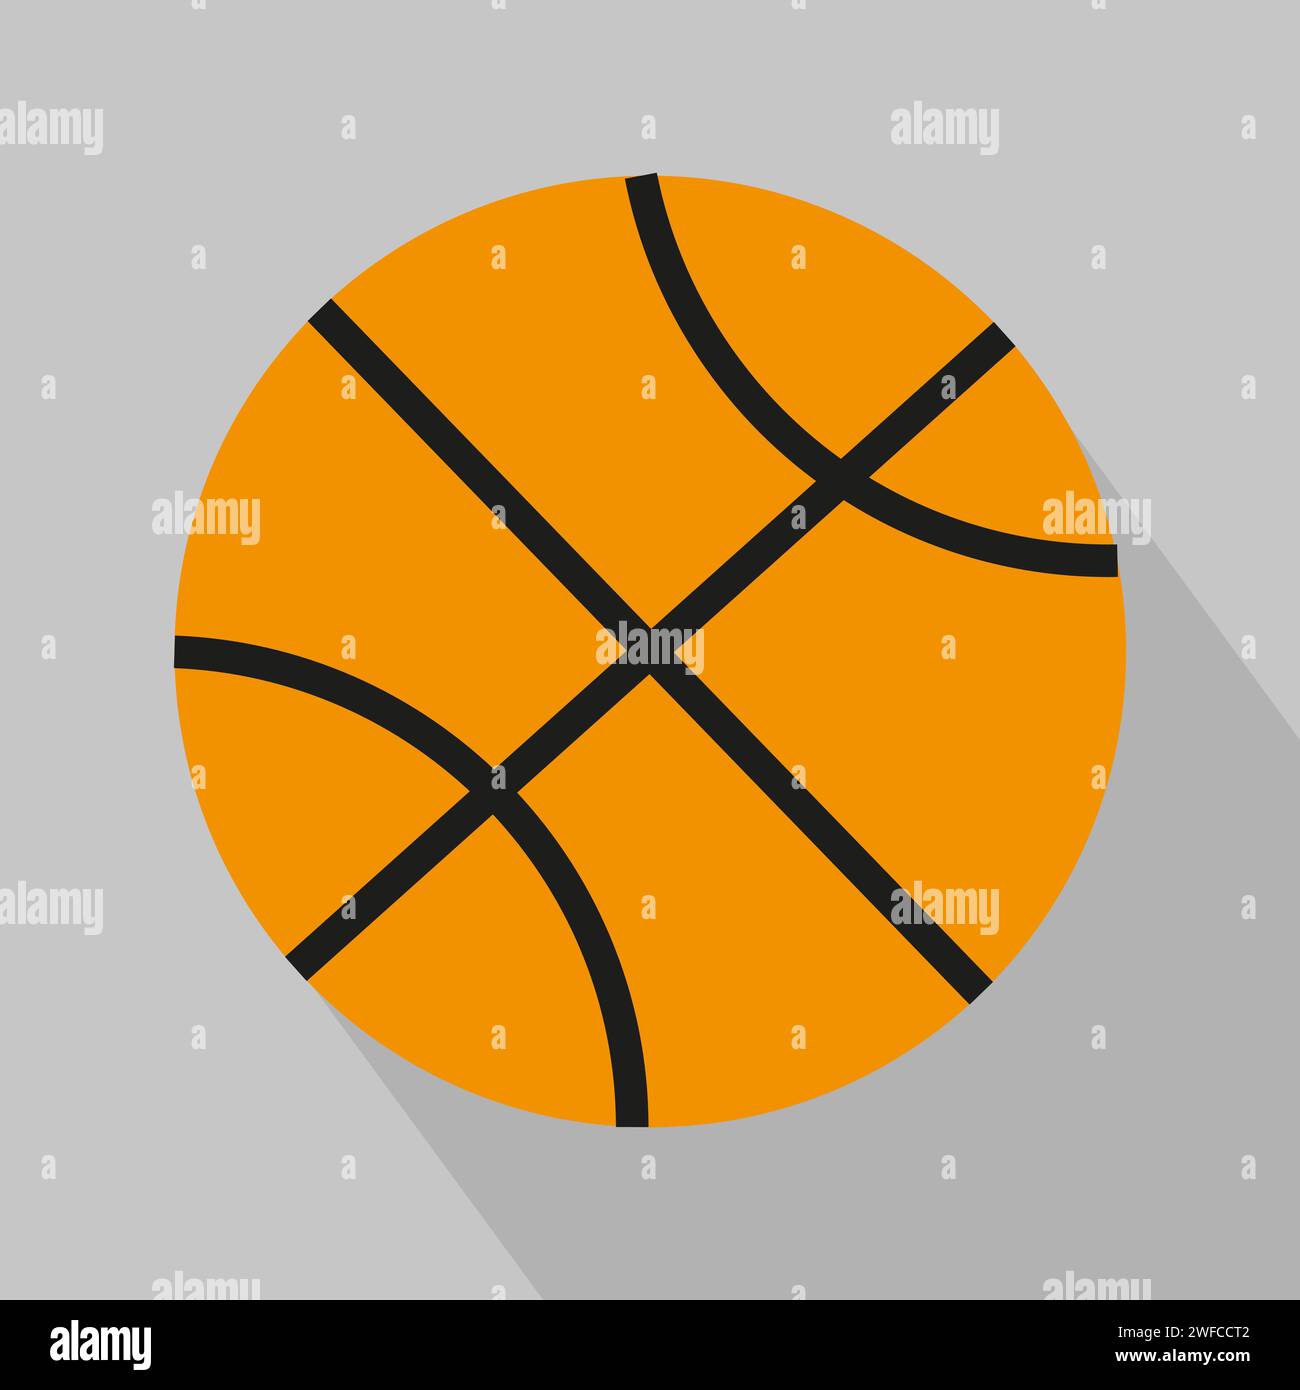 basket-ball orange. Sport d'équipe. Illustration vectorielle. Image de stock. spe 10. Illustration de Vecteur